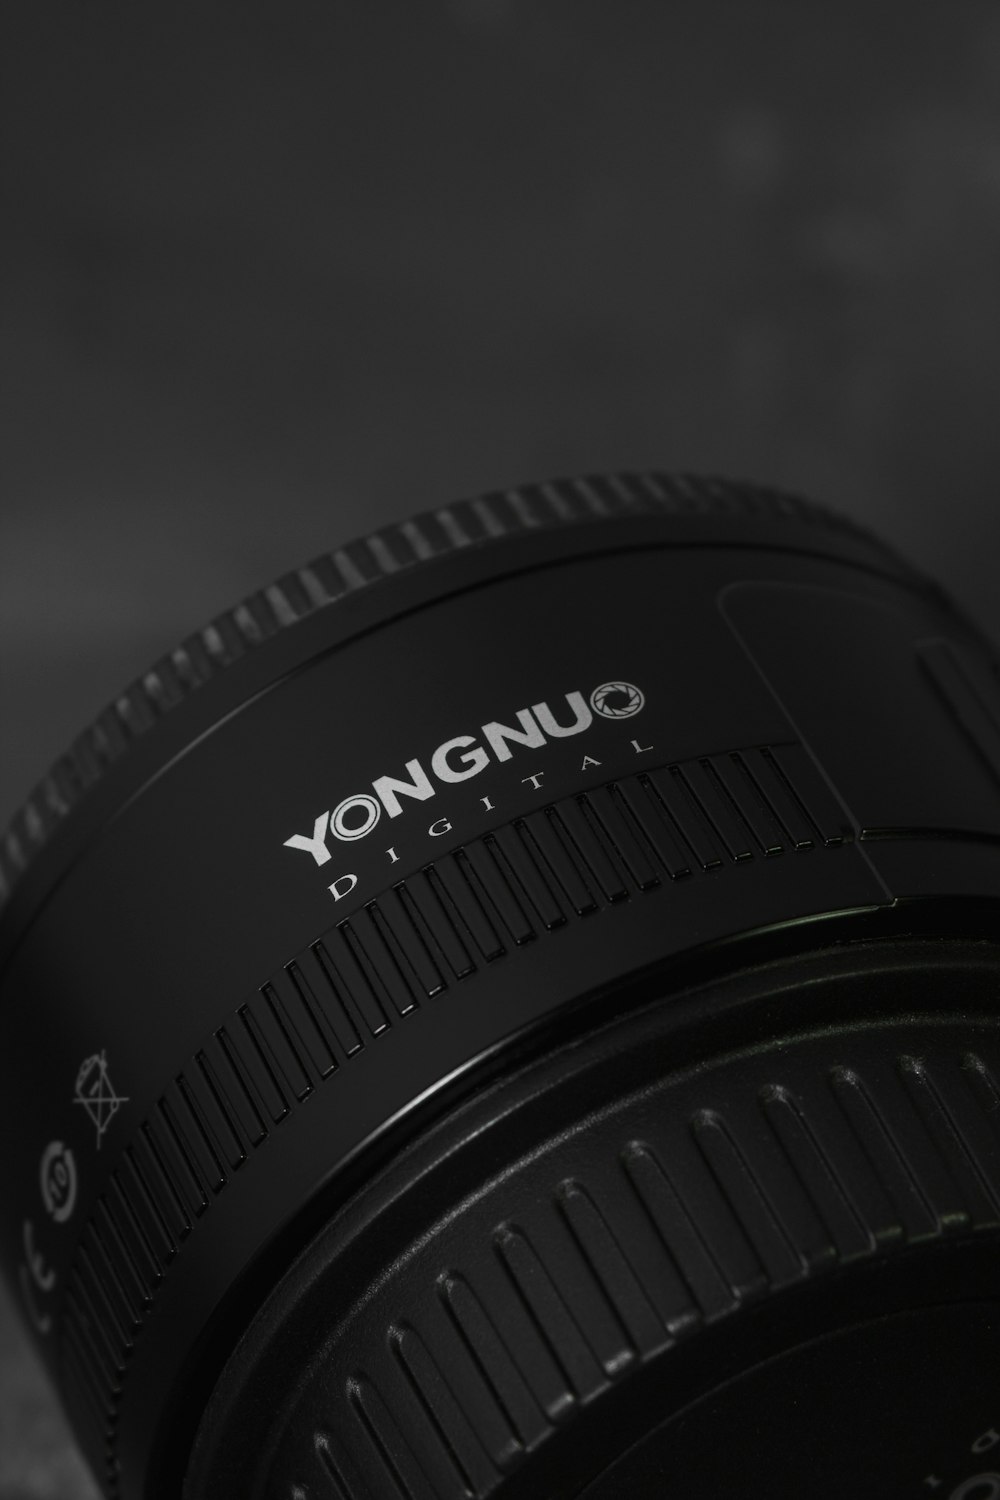 lente da câmera canônica preta na superfície branca